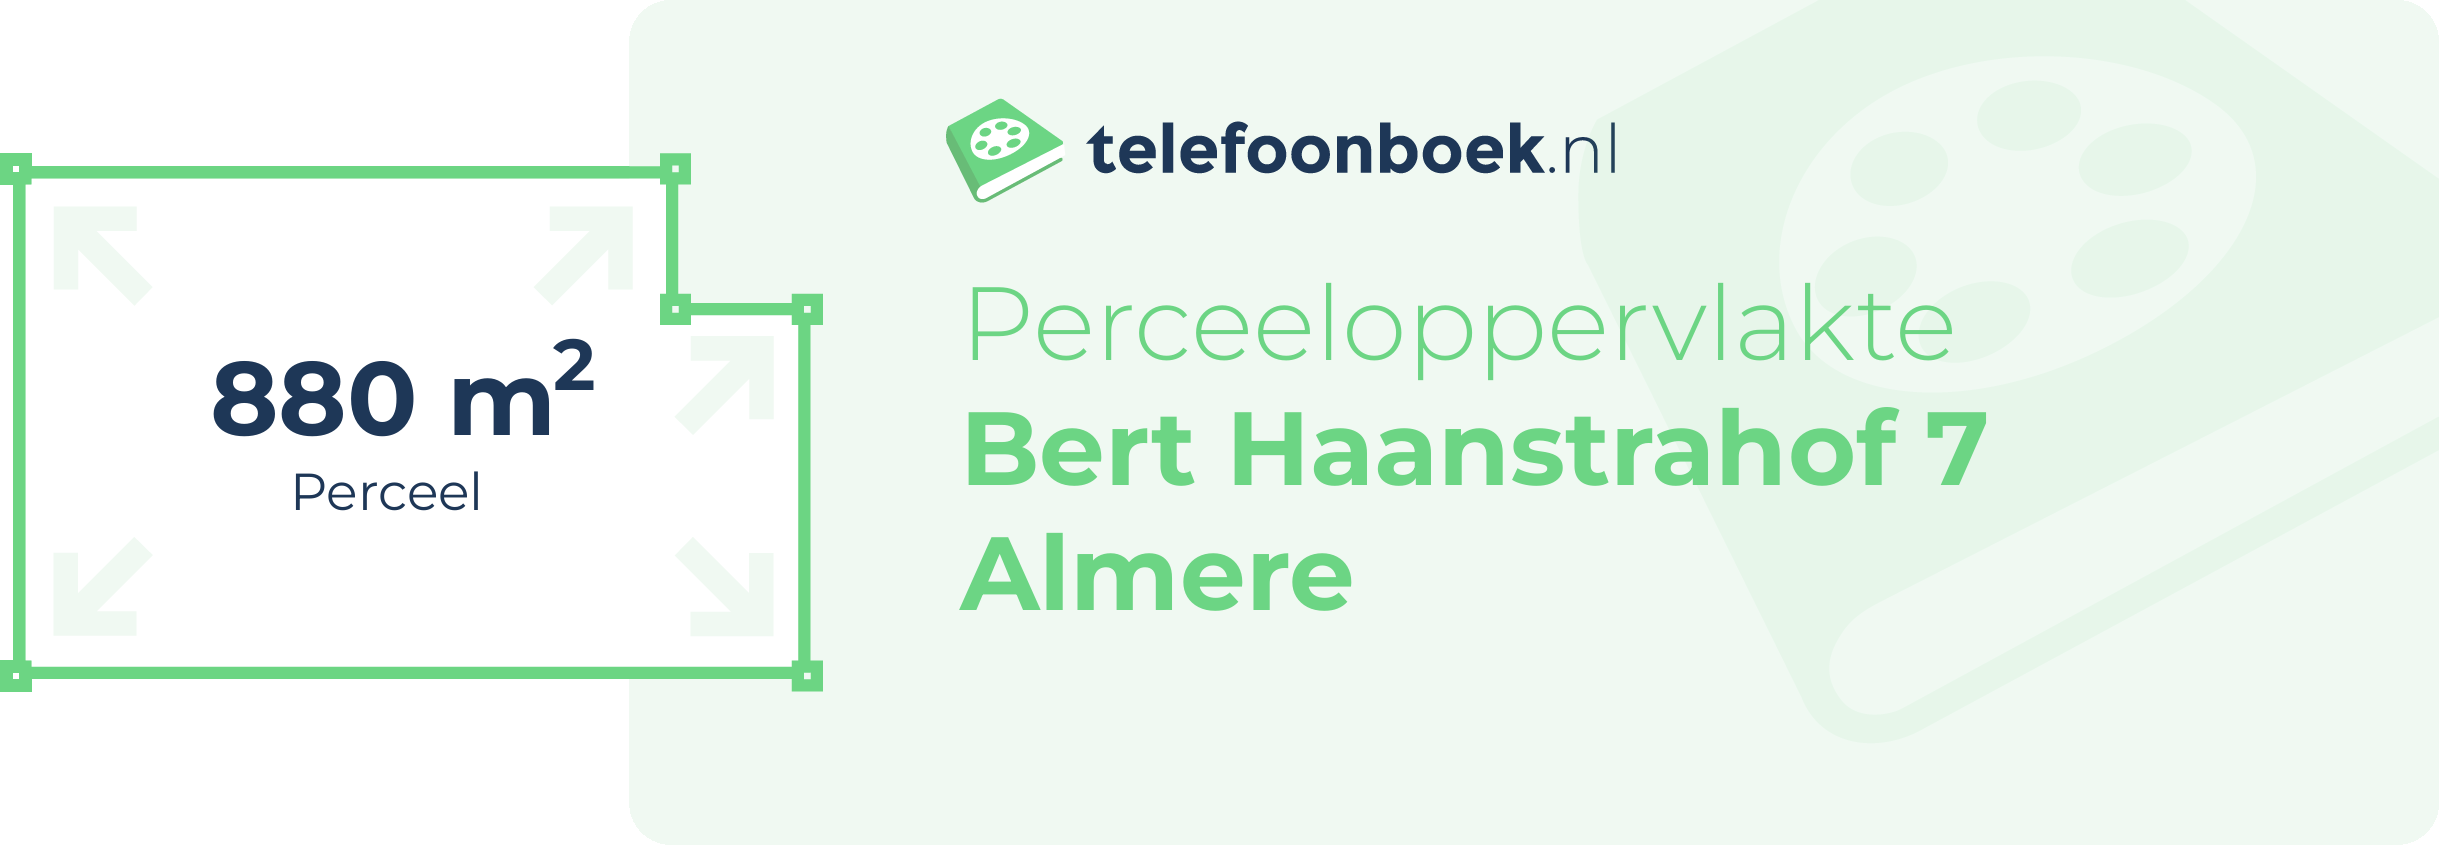 Perceeloppervlakte Bert Haanstrahof 7 Almere